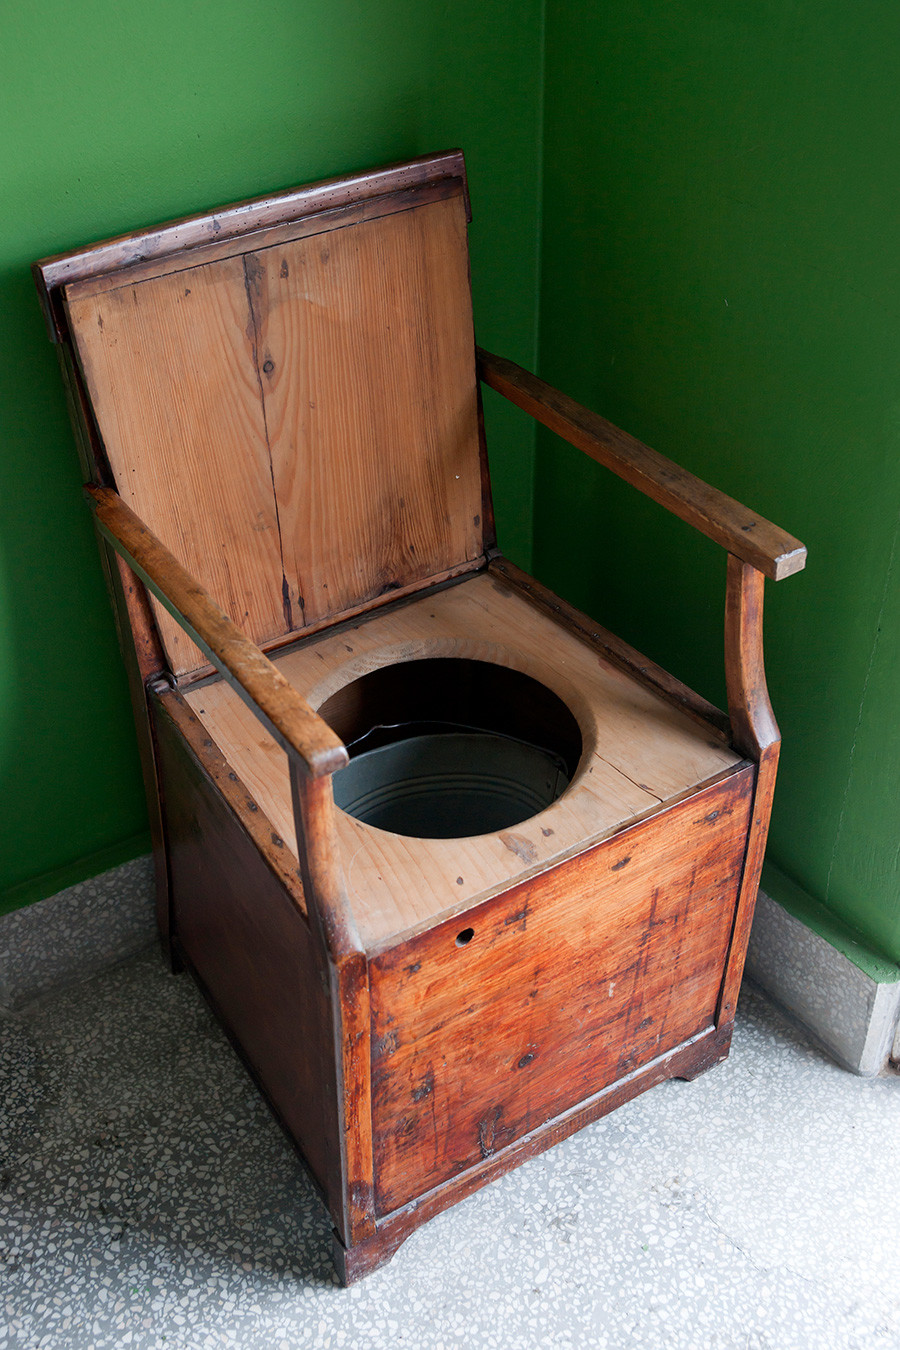 Inodoro vintage hecho de sillón de madera y cubo.
